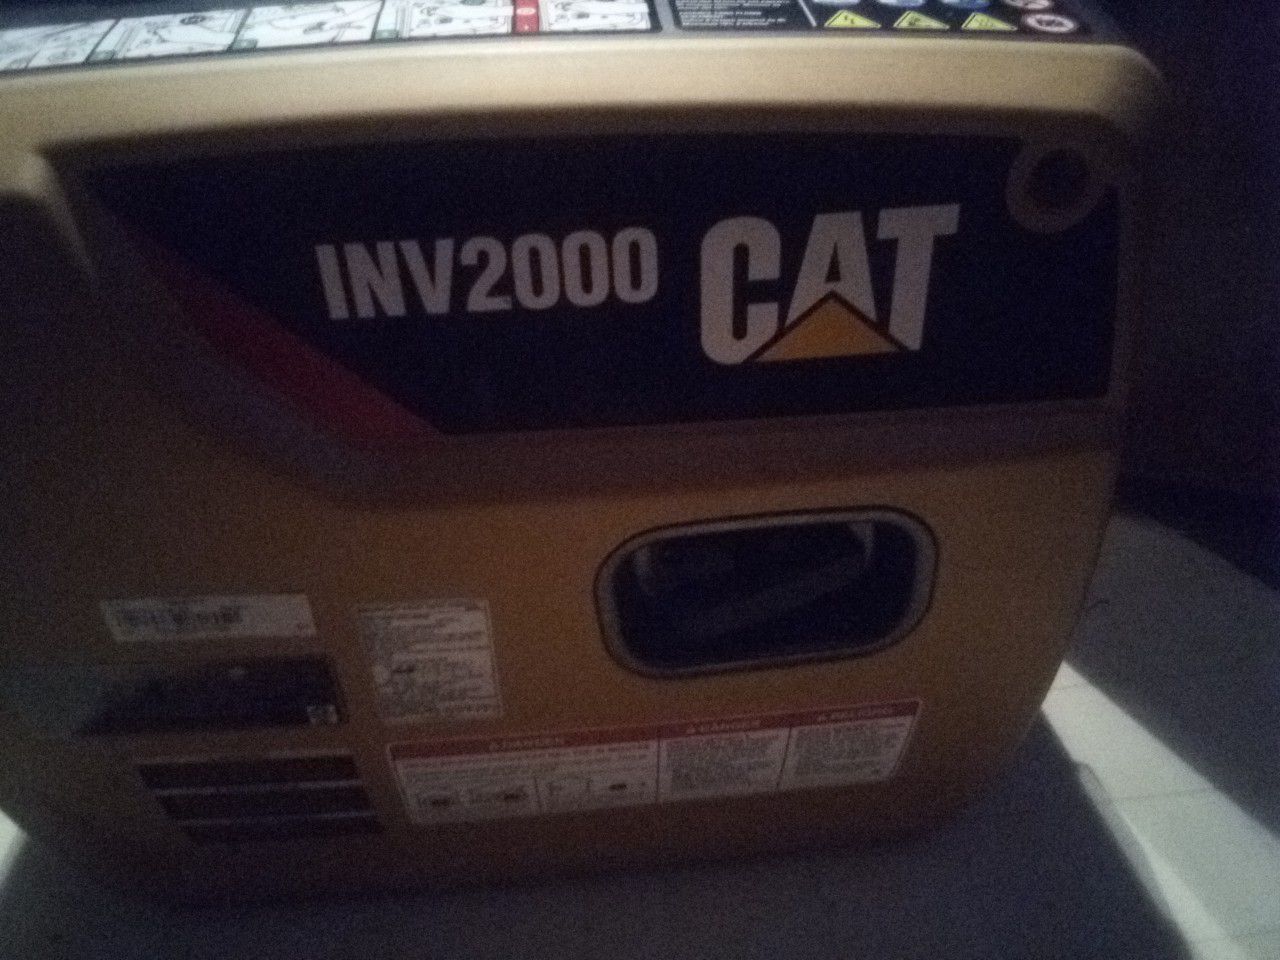 Cat inv2000 generator